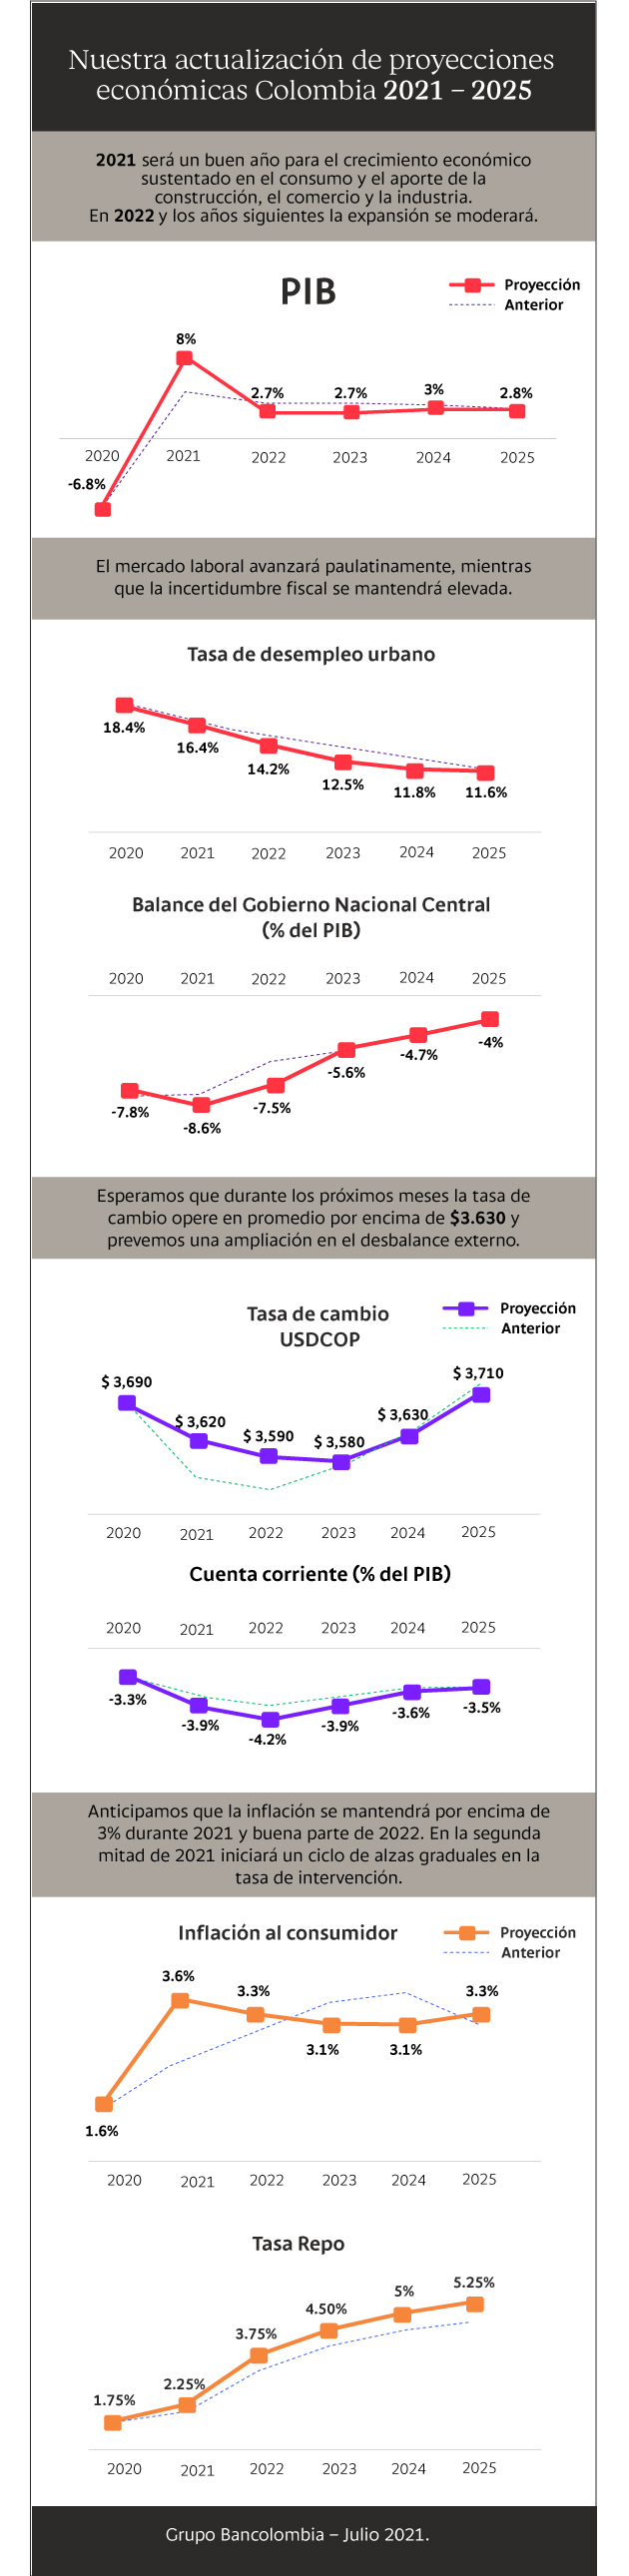 Infografía con la actualización de proyecciones Colombia 2021-2055 de Bancolombia: PIB, inflación, tasa de cambio, tasa de desempleo, balance GNC, cuenta corriente, tasa repo